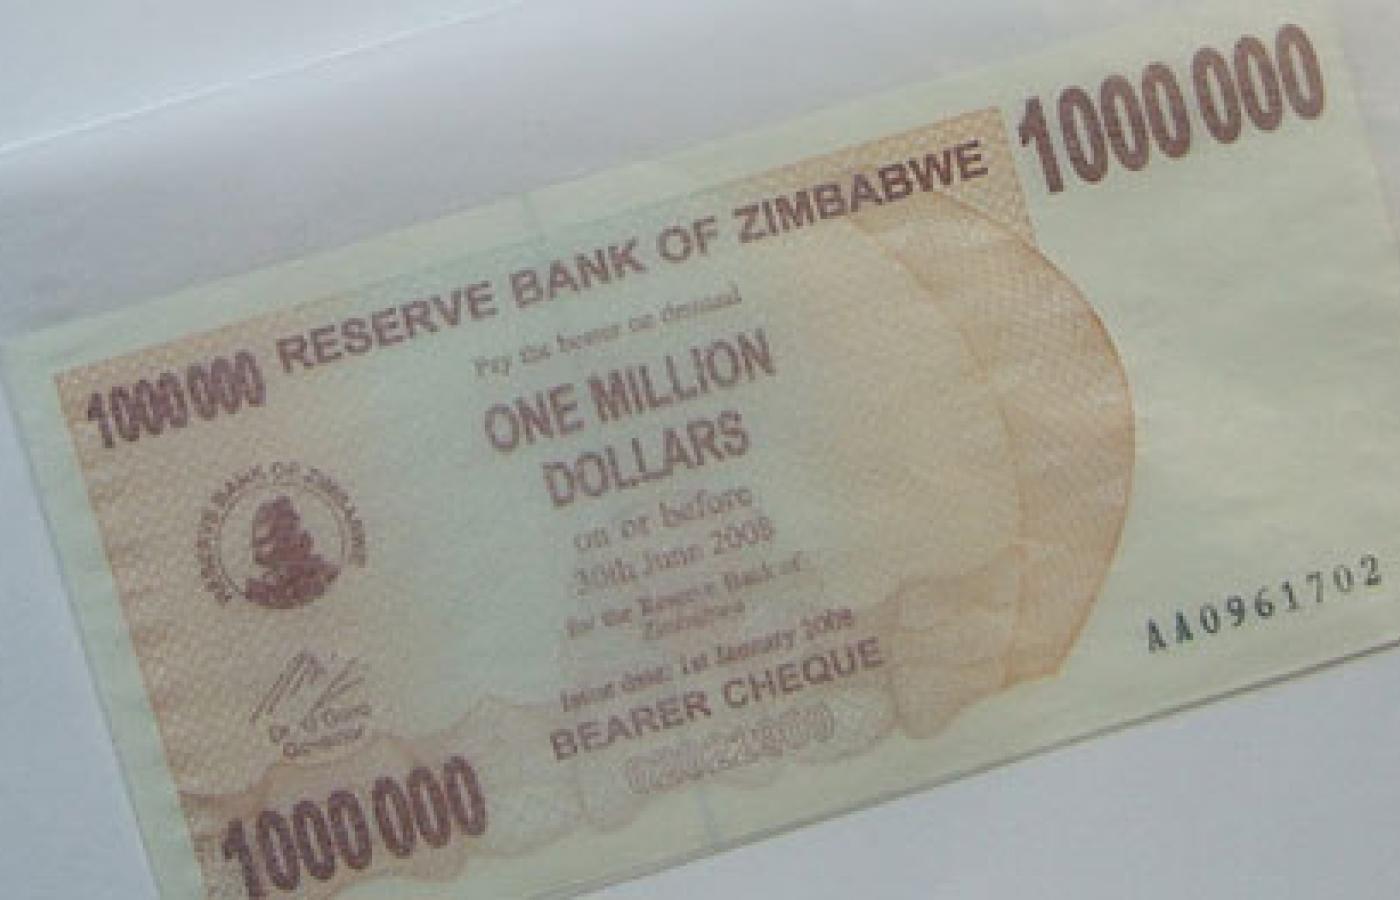 Dawno, dawno temu... Banknot o nominale 1 mln dolarów zimbabweńskich - miłe złego początki, mnożenie zer czas zacząć. Fot. goosmurf, Flickr, CC by SA